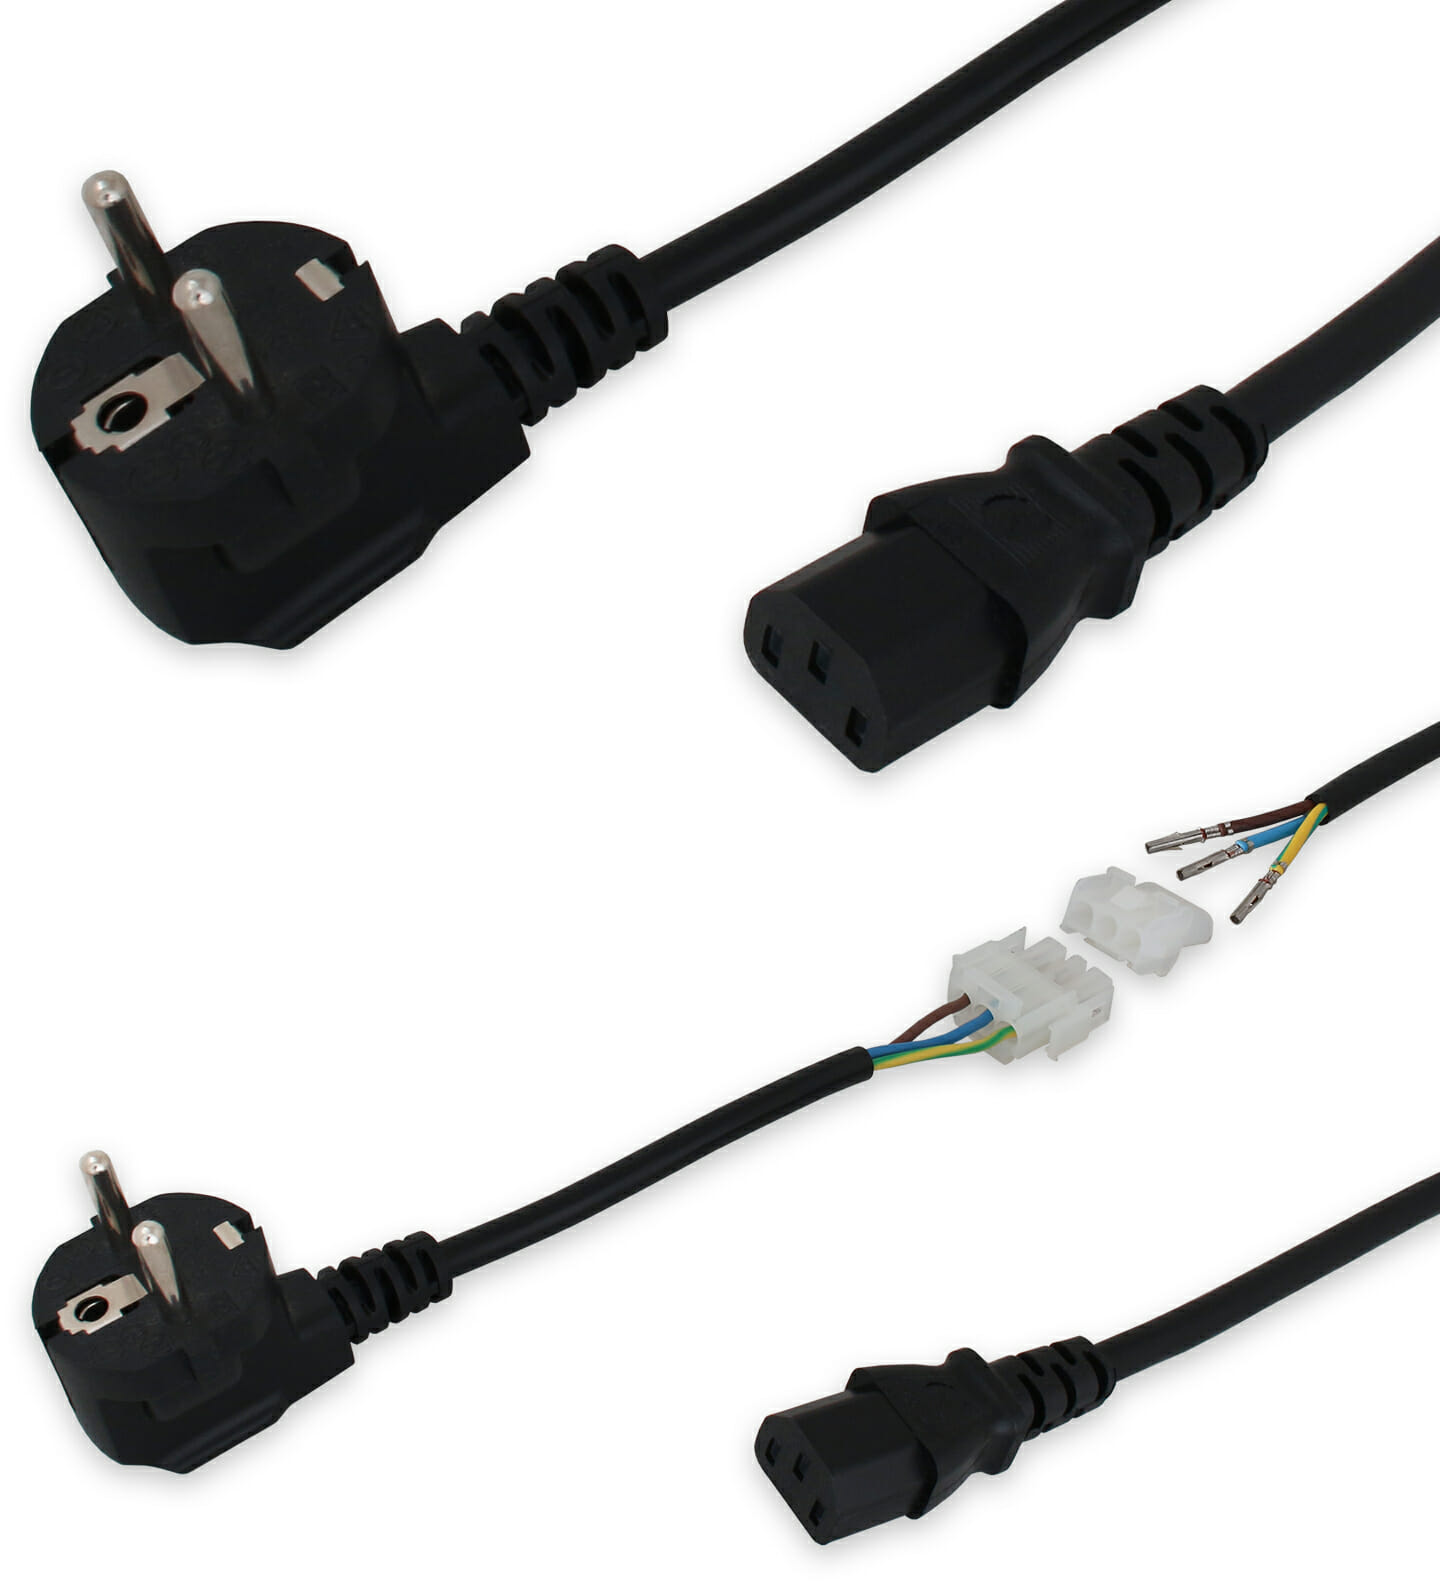 Cables de alimentación y red eléctrica para pantallas industriales